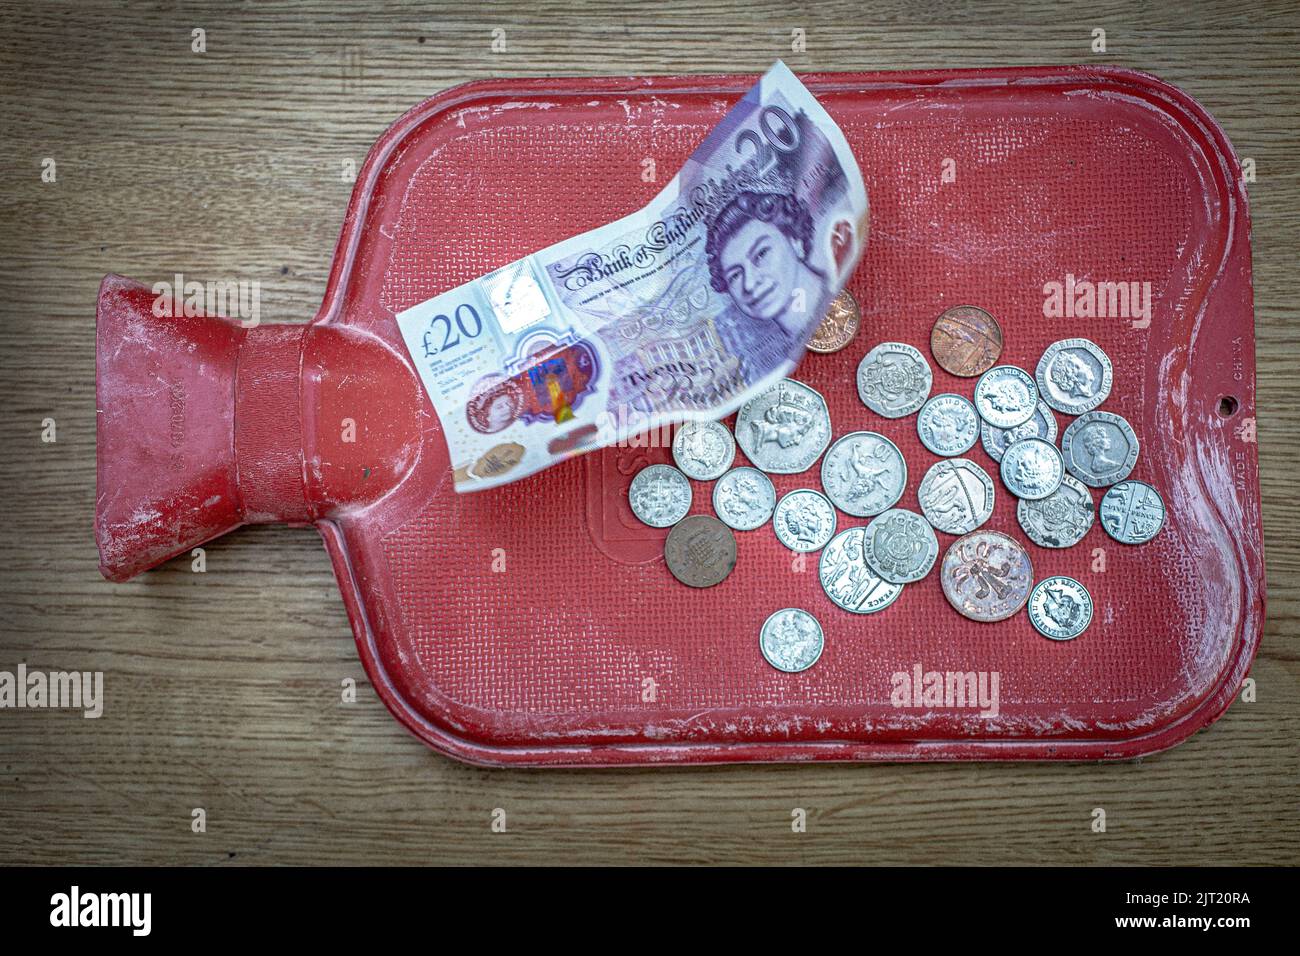 Nahaufnahme einer Heißwasserflasche und britischer £20-Note und Münzen als Treibstoffrechnung Rakete Stockfoto